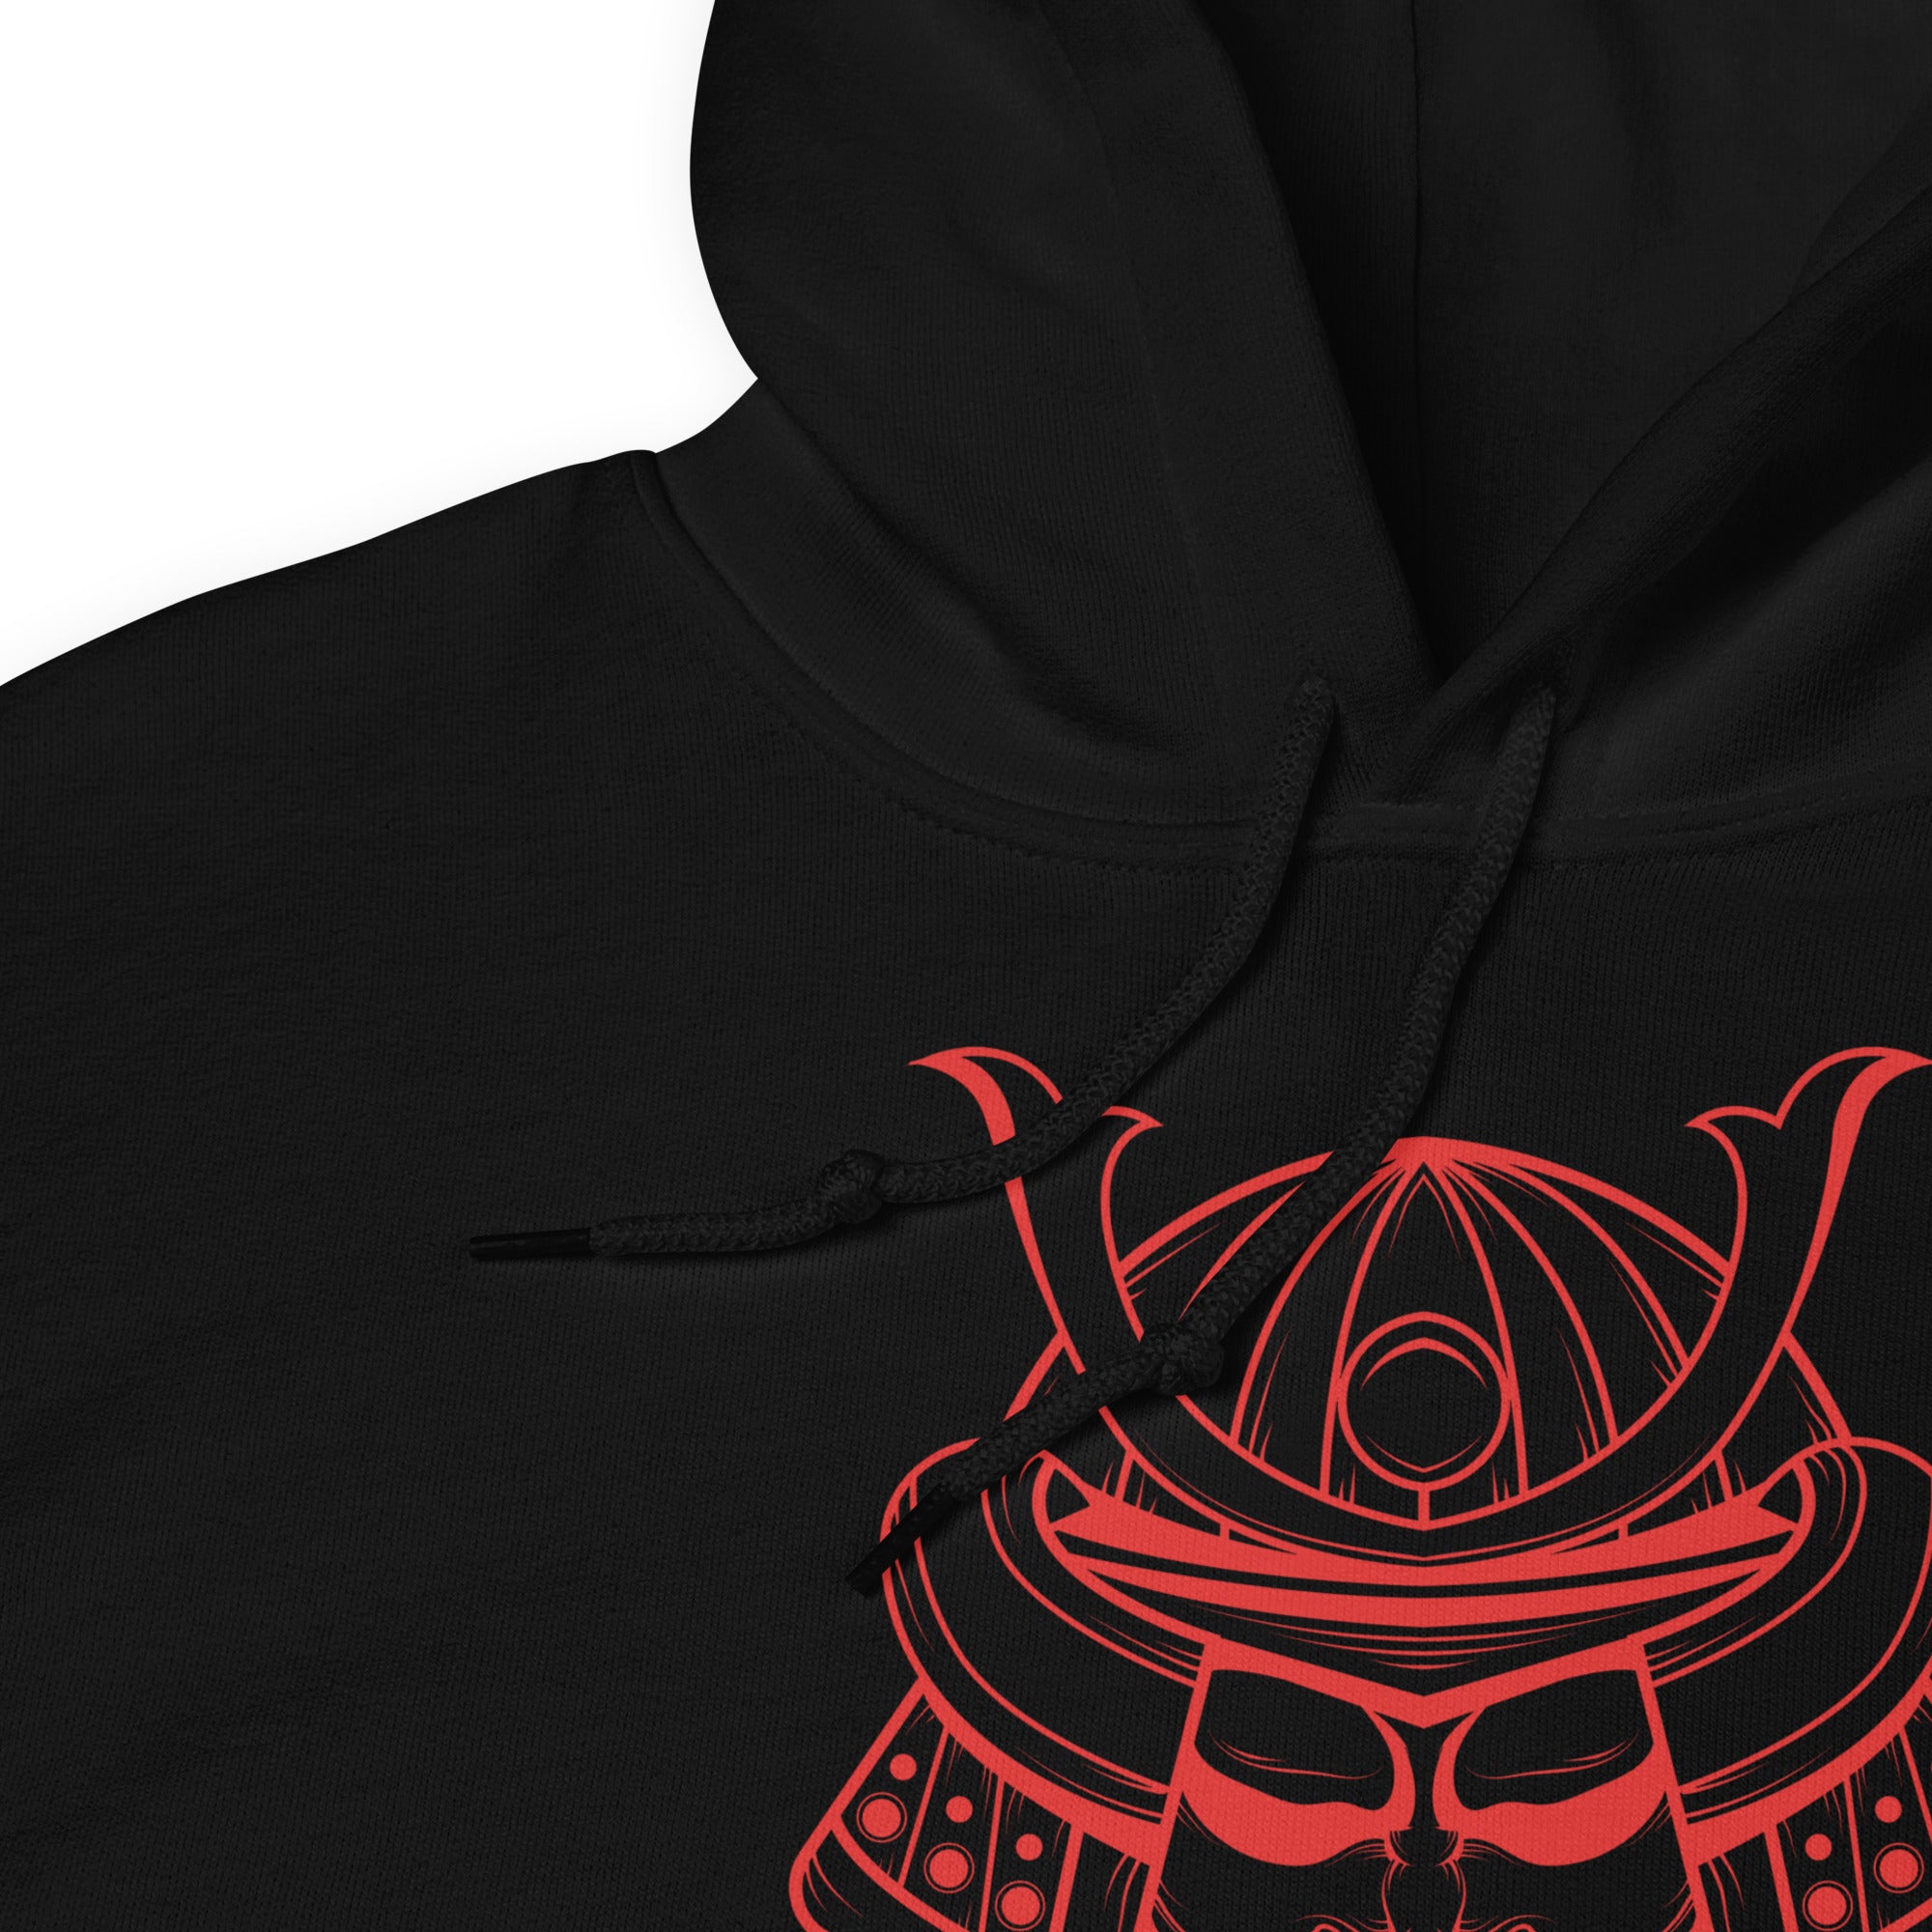 Red Samurai Warrior Kabuto Mempo Mask Hoodie Sweatshirt